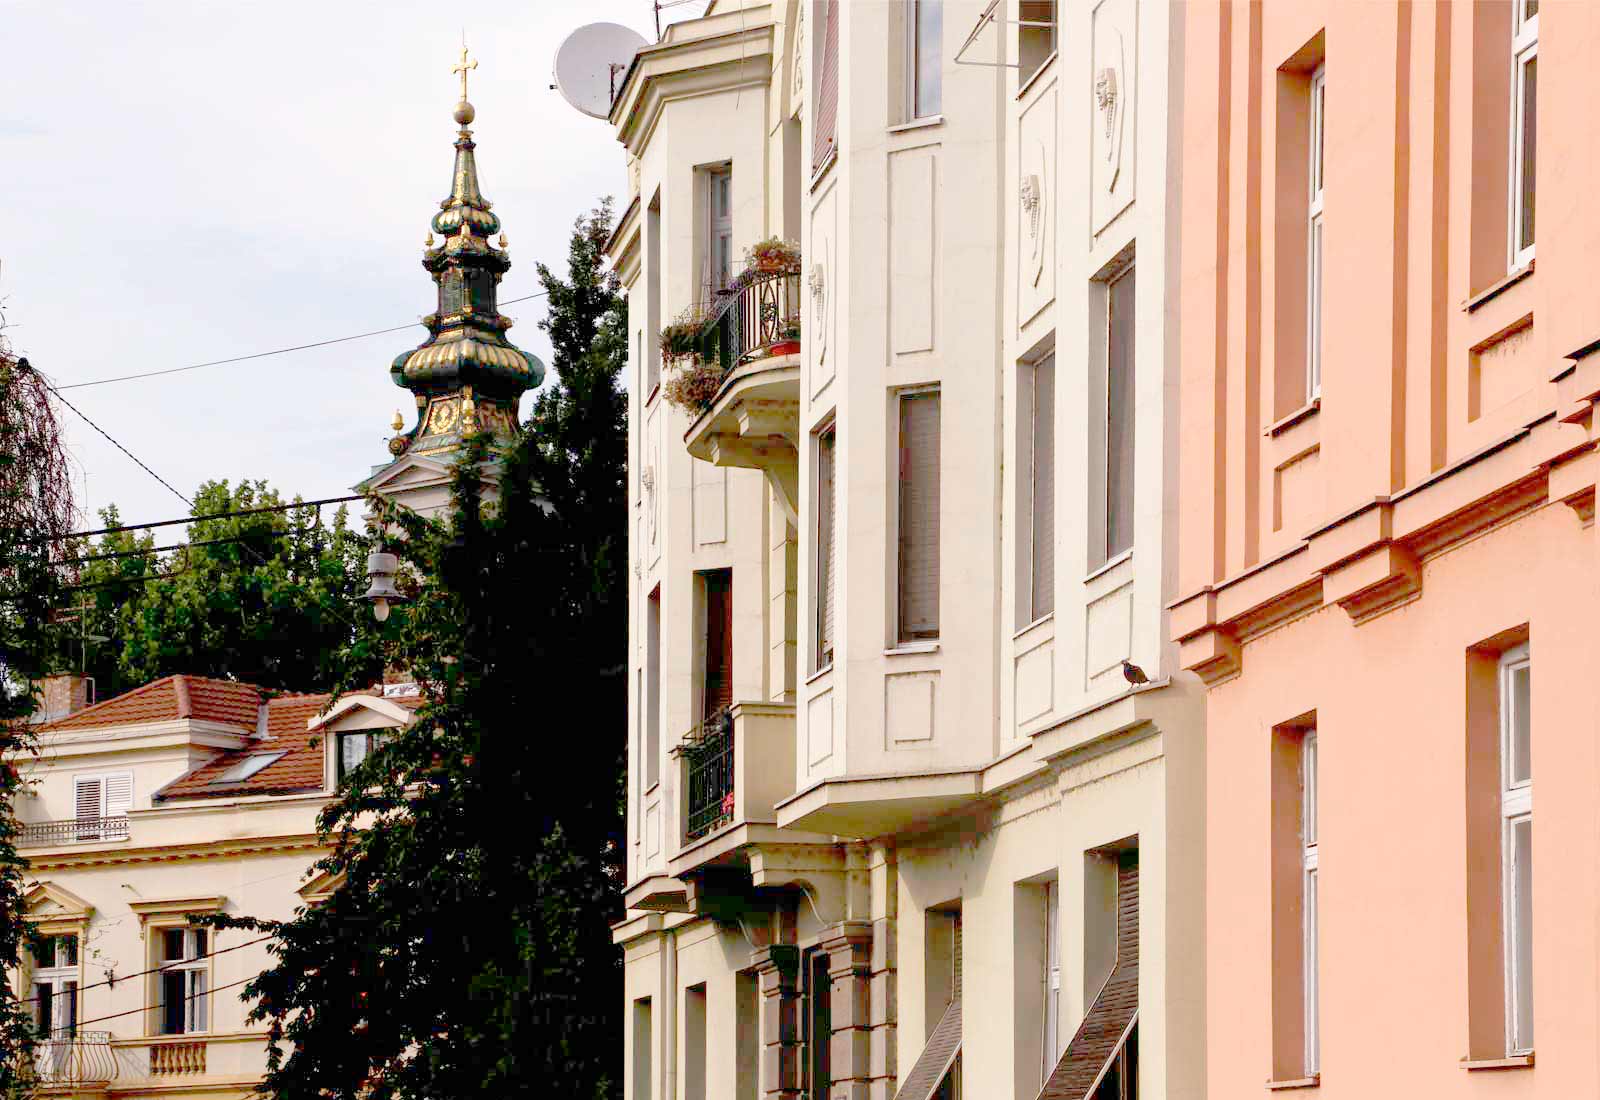 Old Belgrade